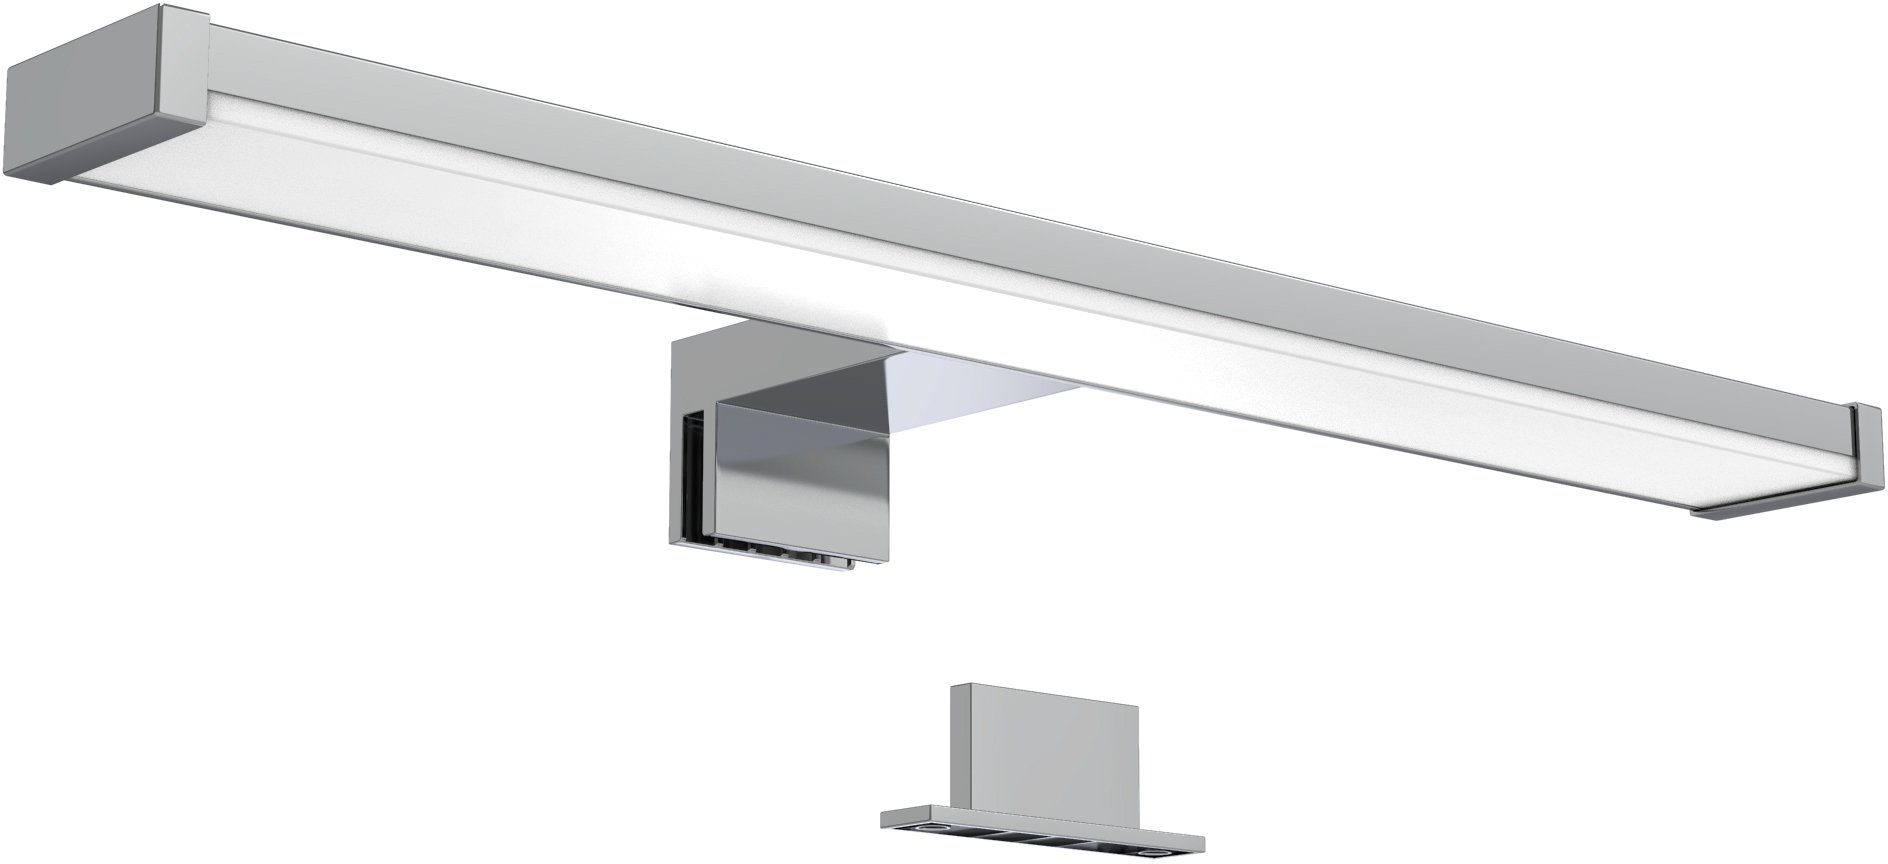 PPAMZ LED Spiegelleuchte Modern Badleuchte Einstellbarer Winkel Acryl Spiegellampe Metall Badlampe Schwarz Badezimmer Lampe Schrankleuchte,3 Colors,40cm/9W 